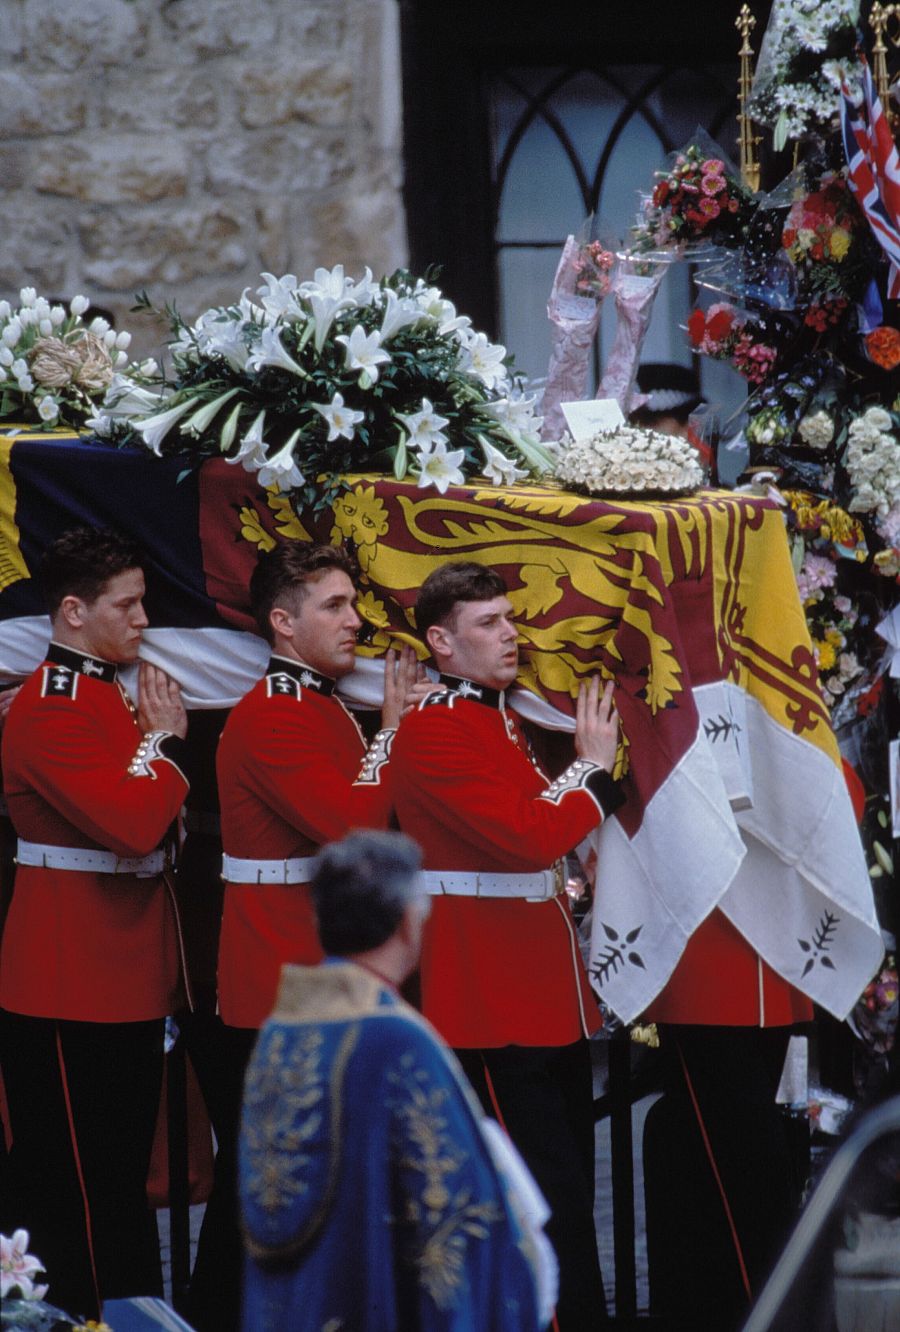  Imagen del funeral de Lady Di